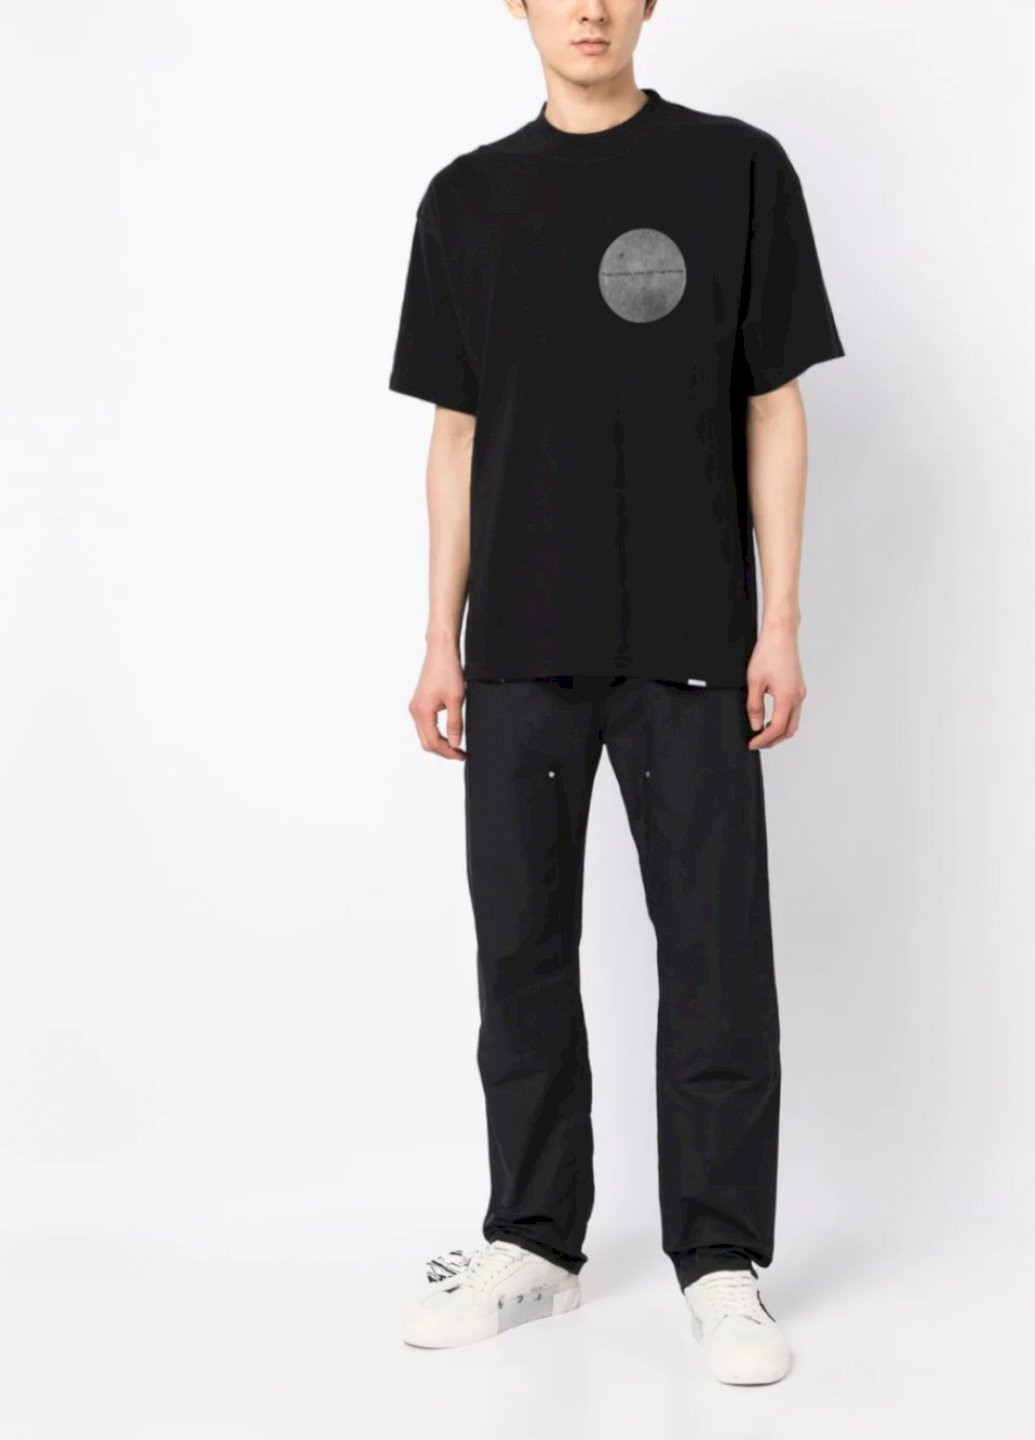 Черная футболка oversize мужская черная "інший бік місяця" Trace of Space